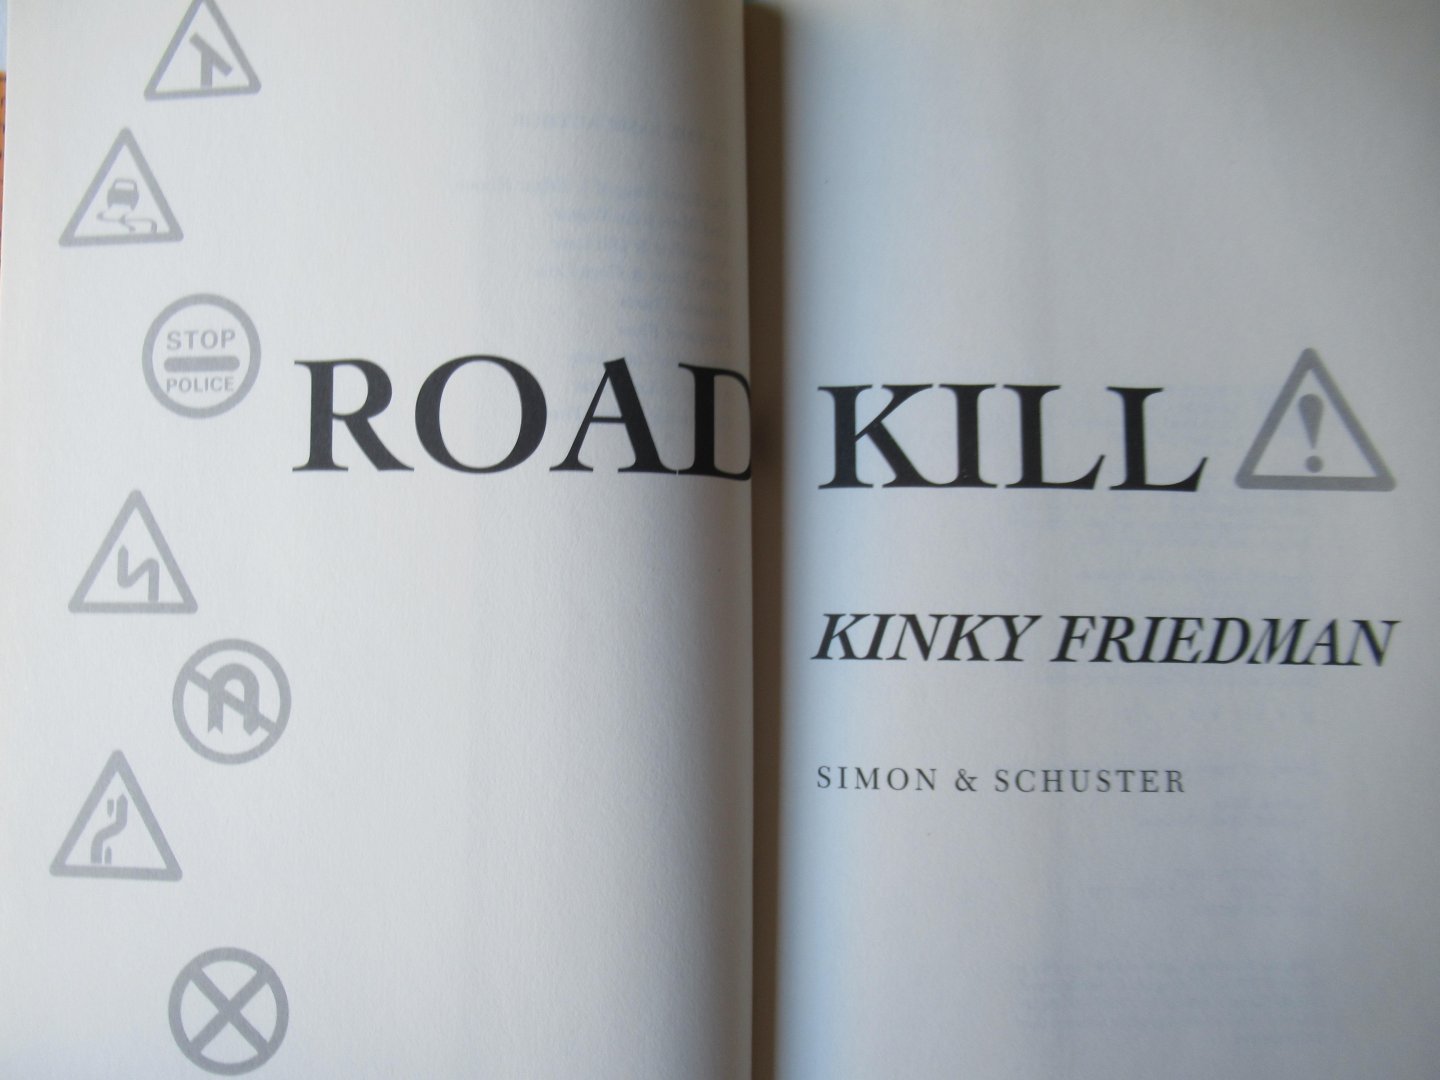 Friedman, Kinky - Roadkill. A novel